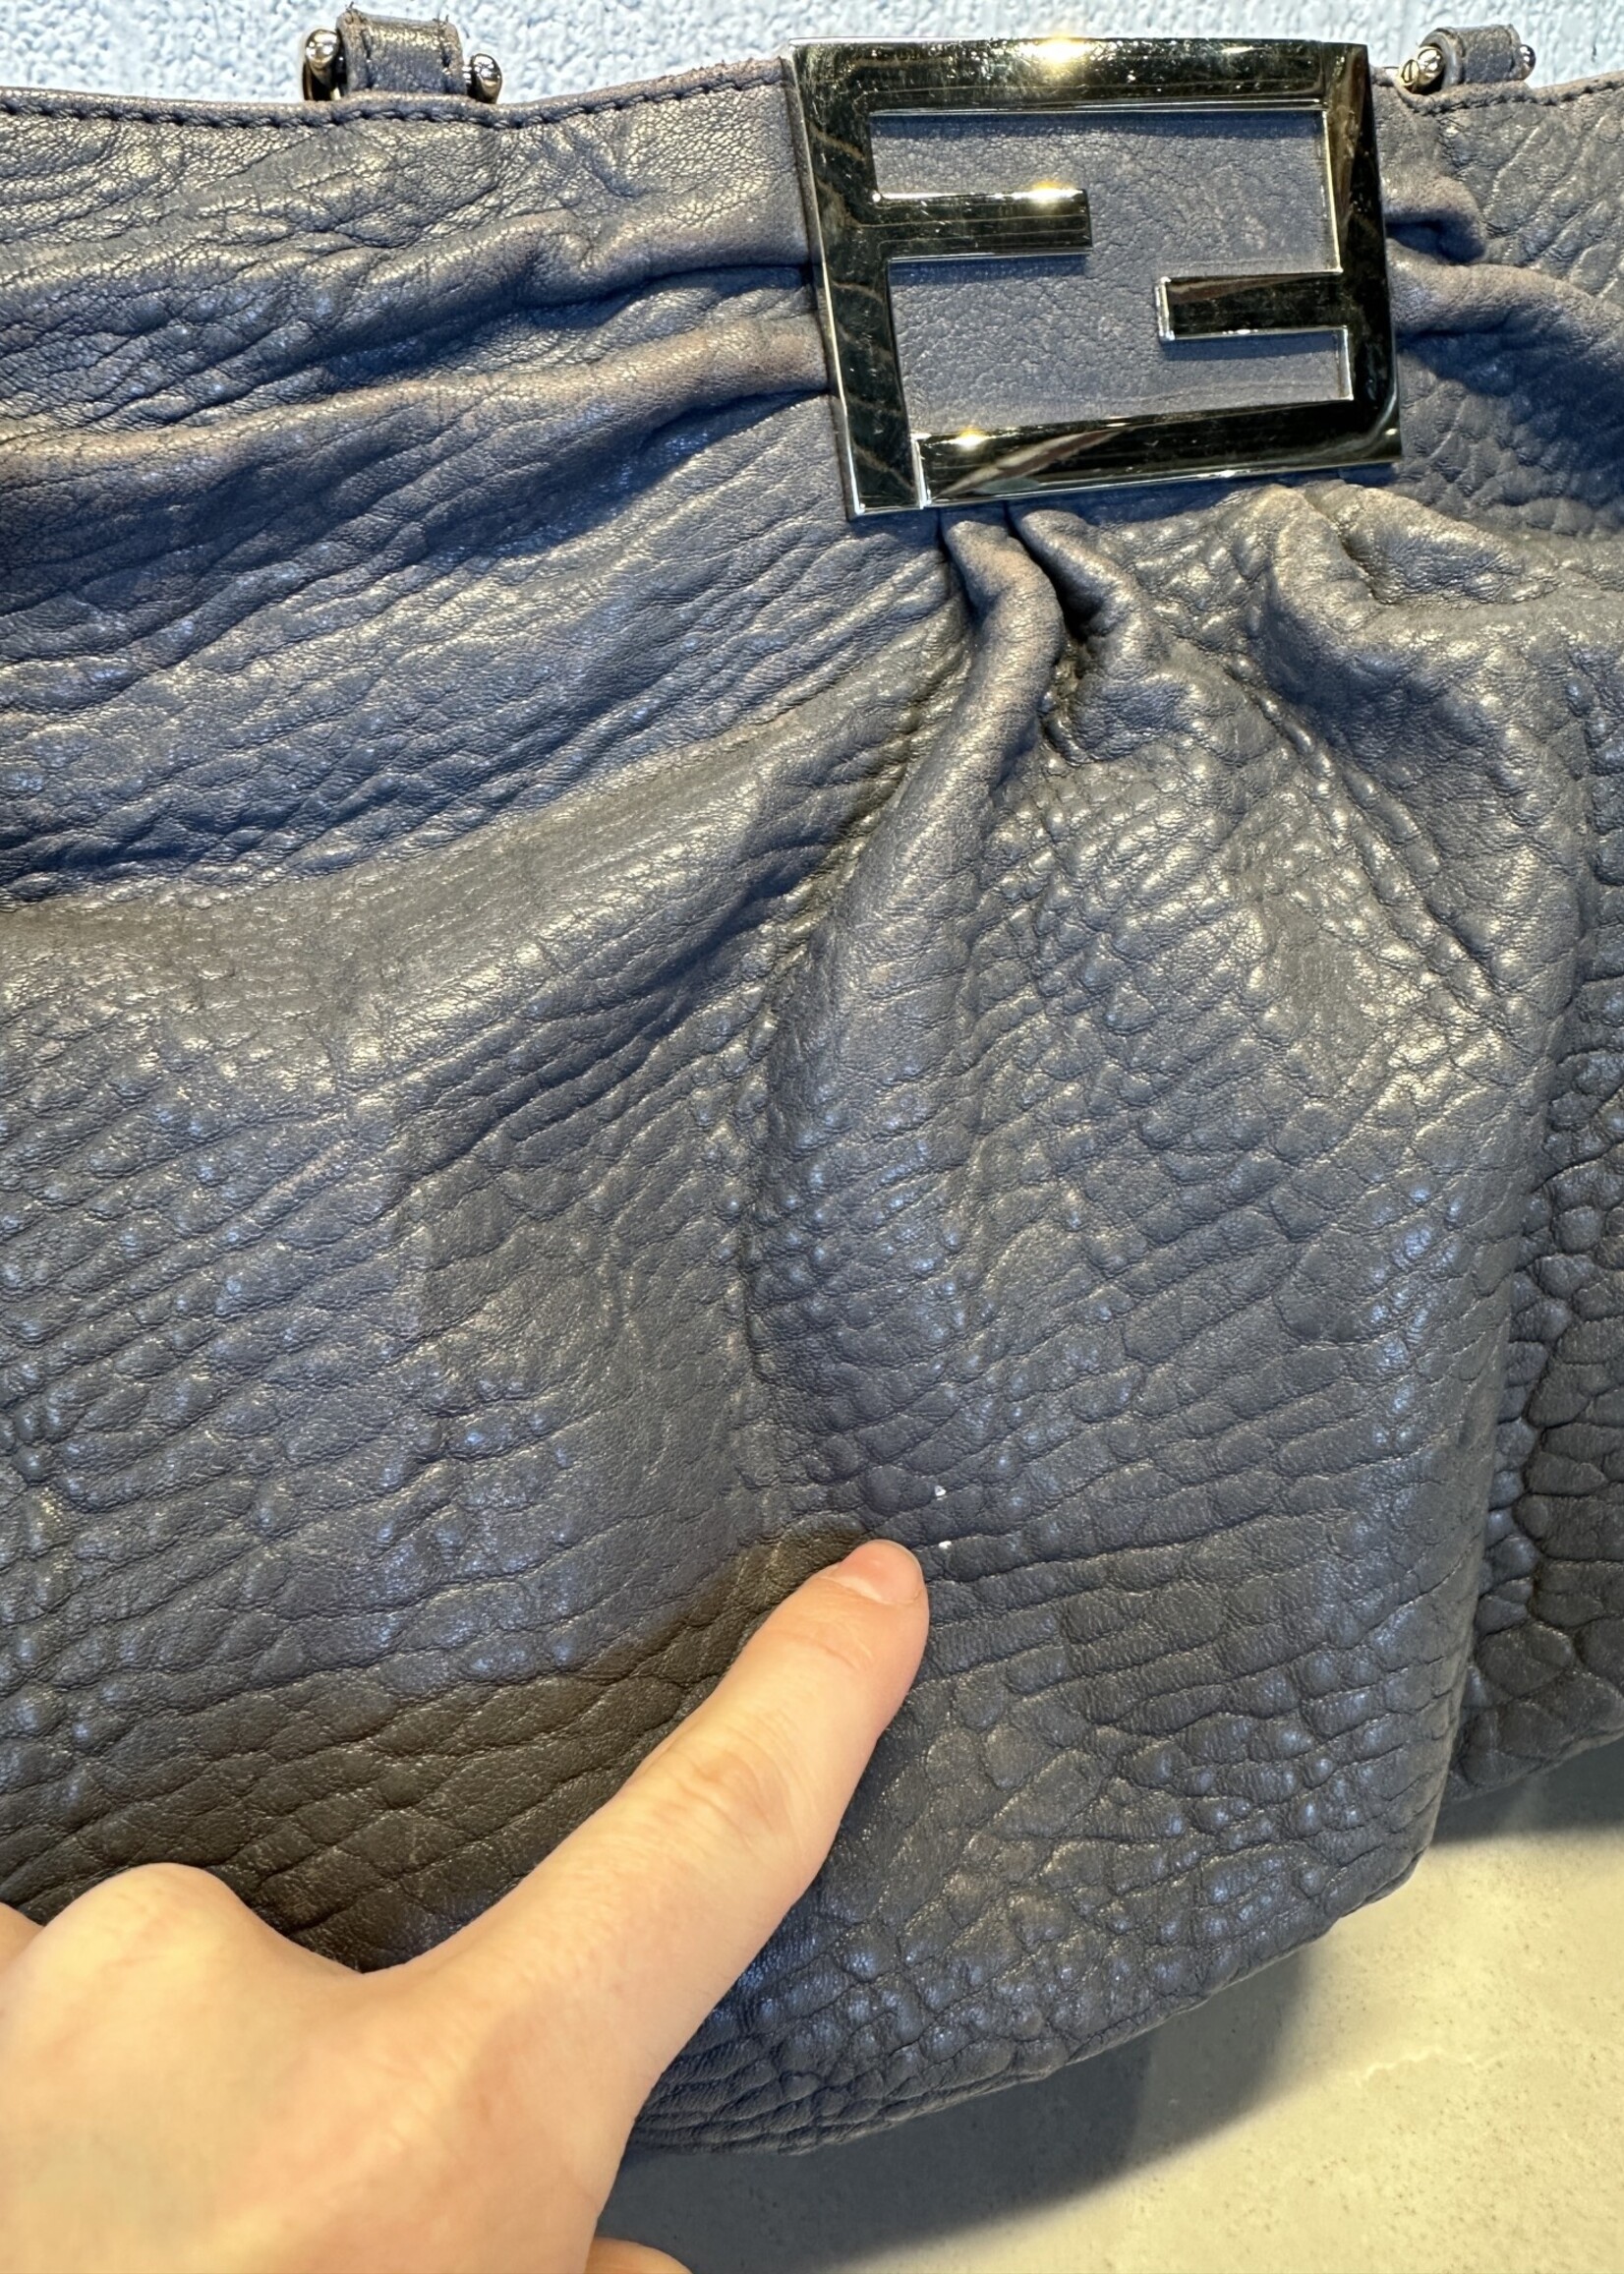 Fendi Mia Leather Hobo Bag